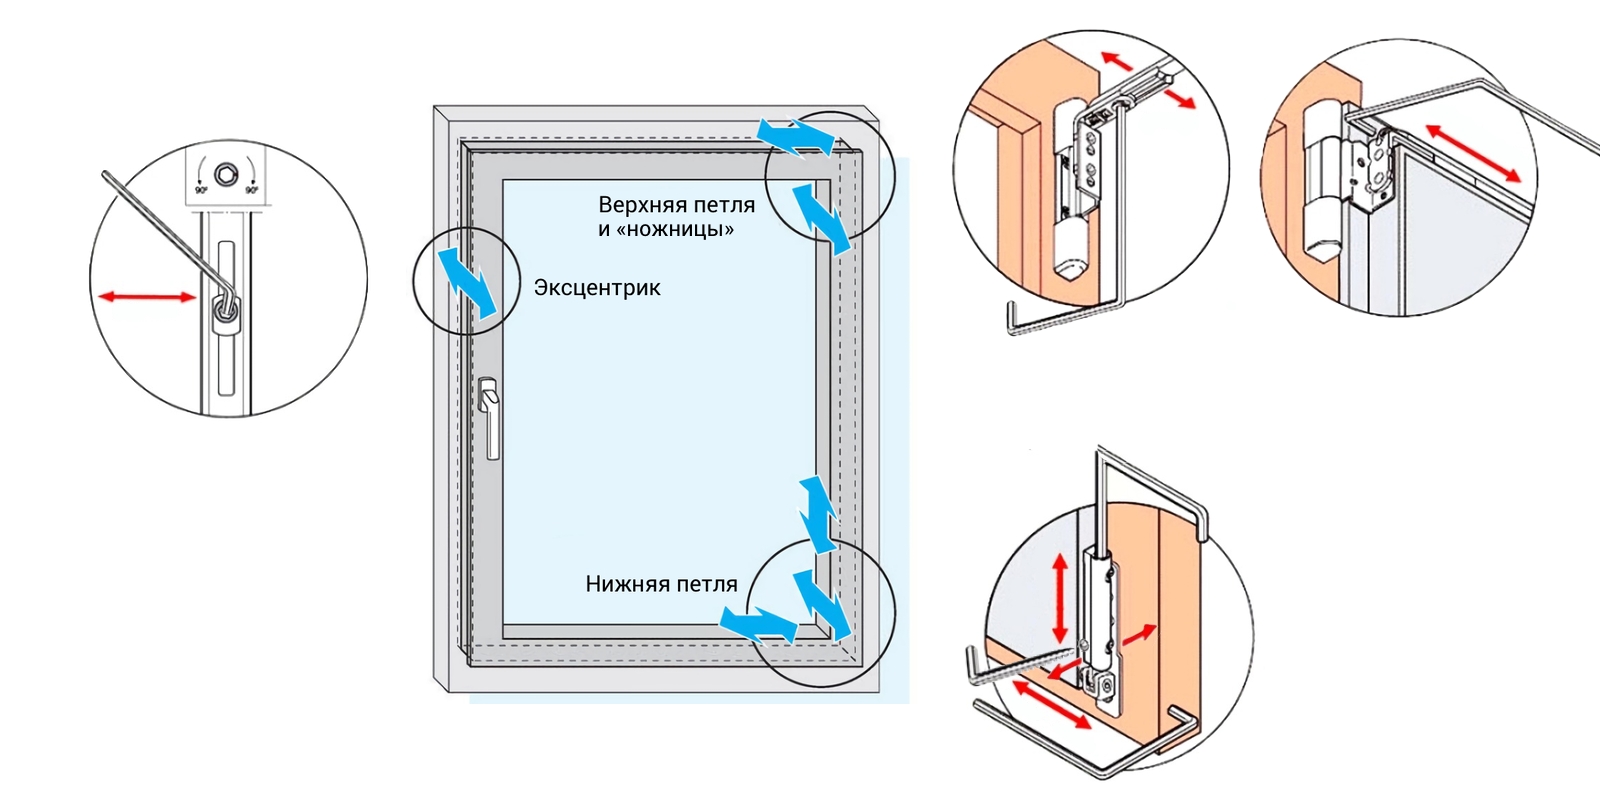 Регулировка пластиковых балконных дверей самостоятельно видео: Как отрегулировать пластиковую балконную дверь самостоятельно, видео.